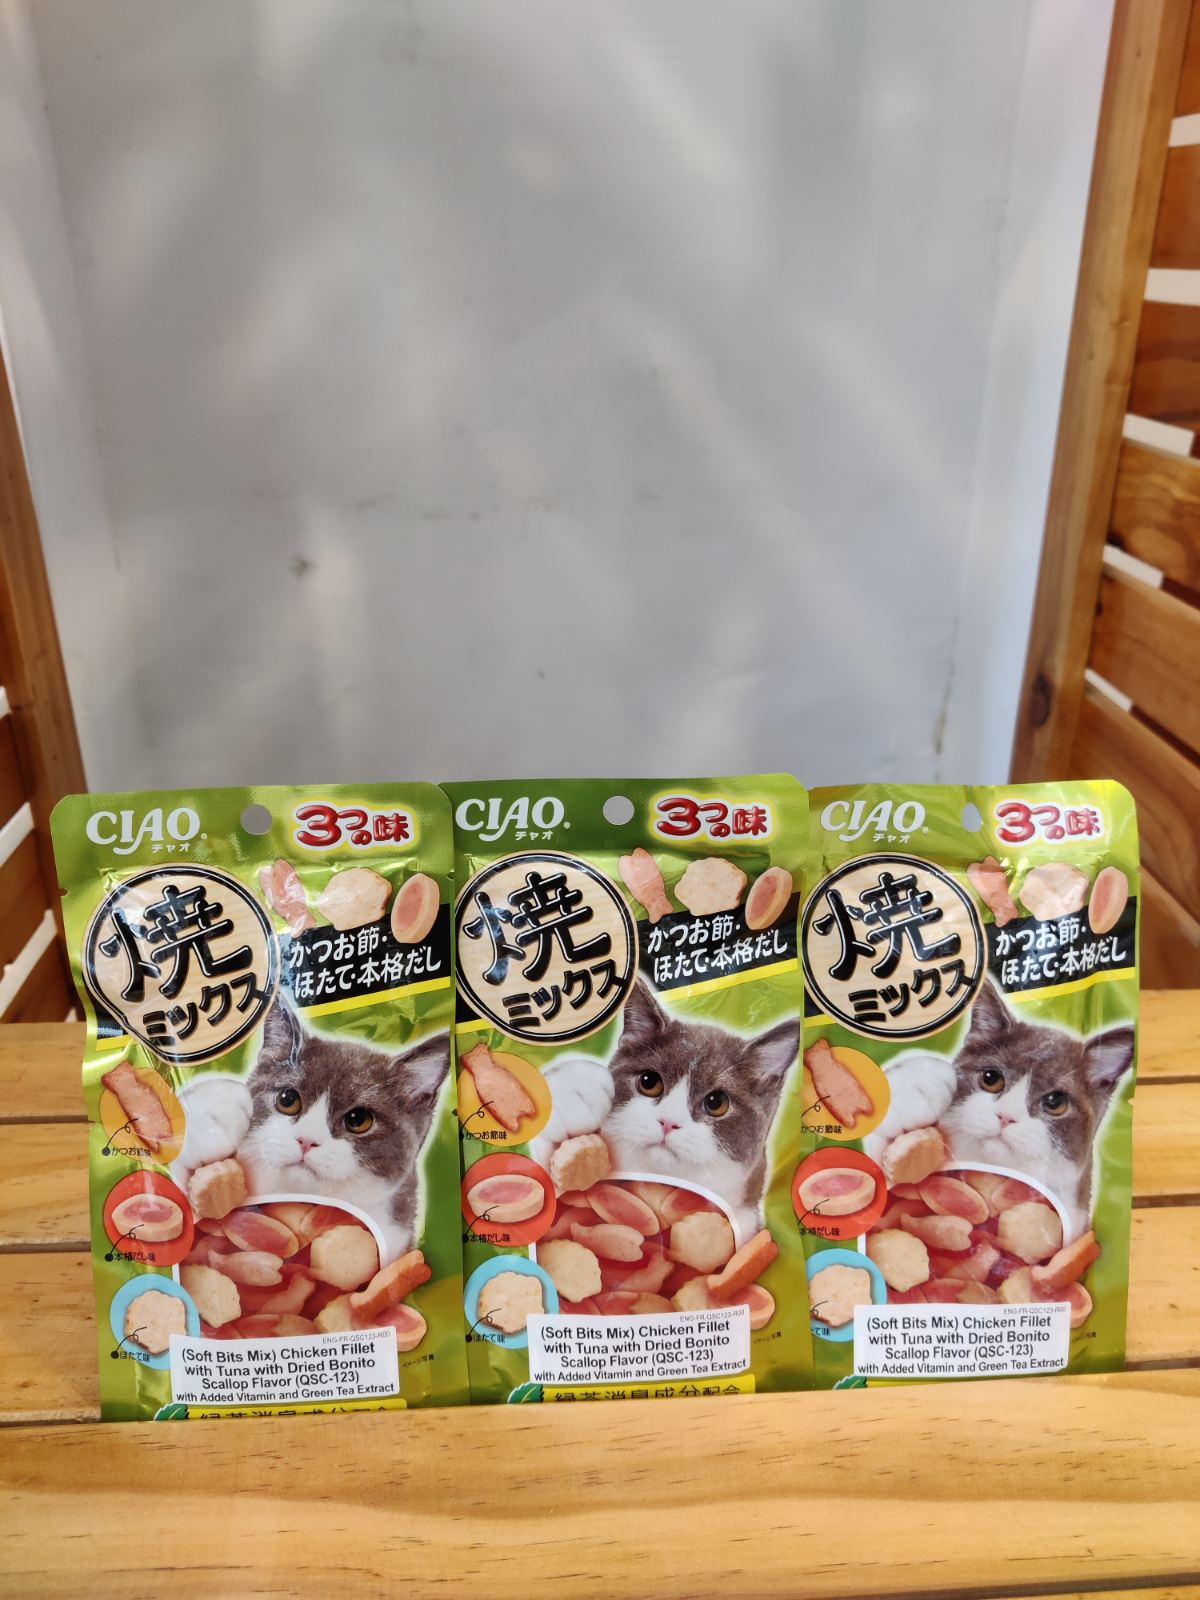 CIAO- Soft Bites 123 (Chicken Tuna & Dried Bonito)